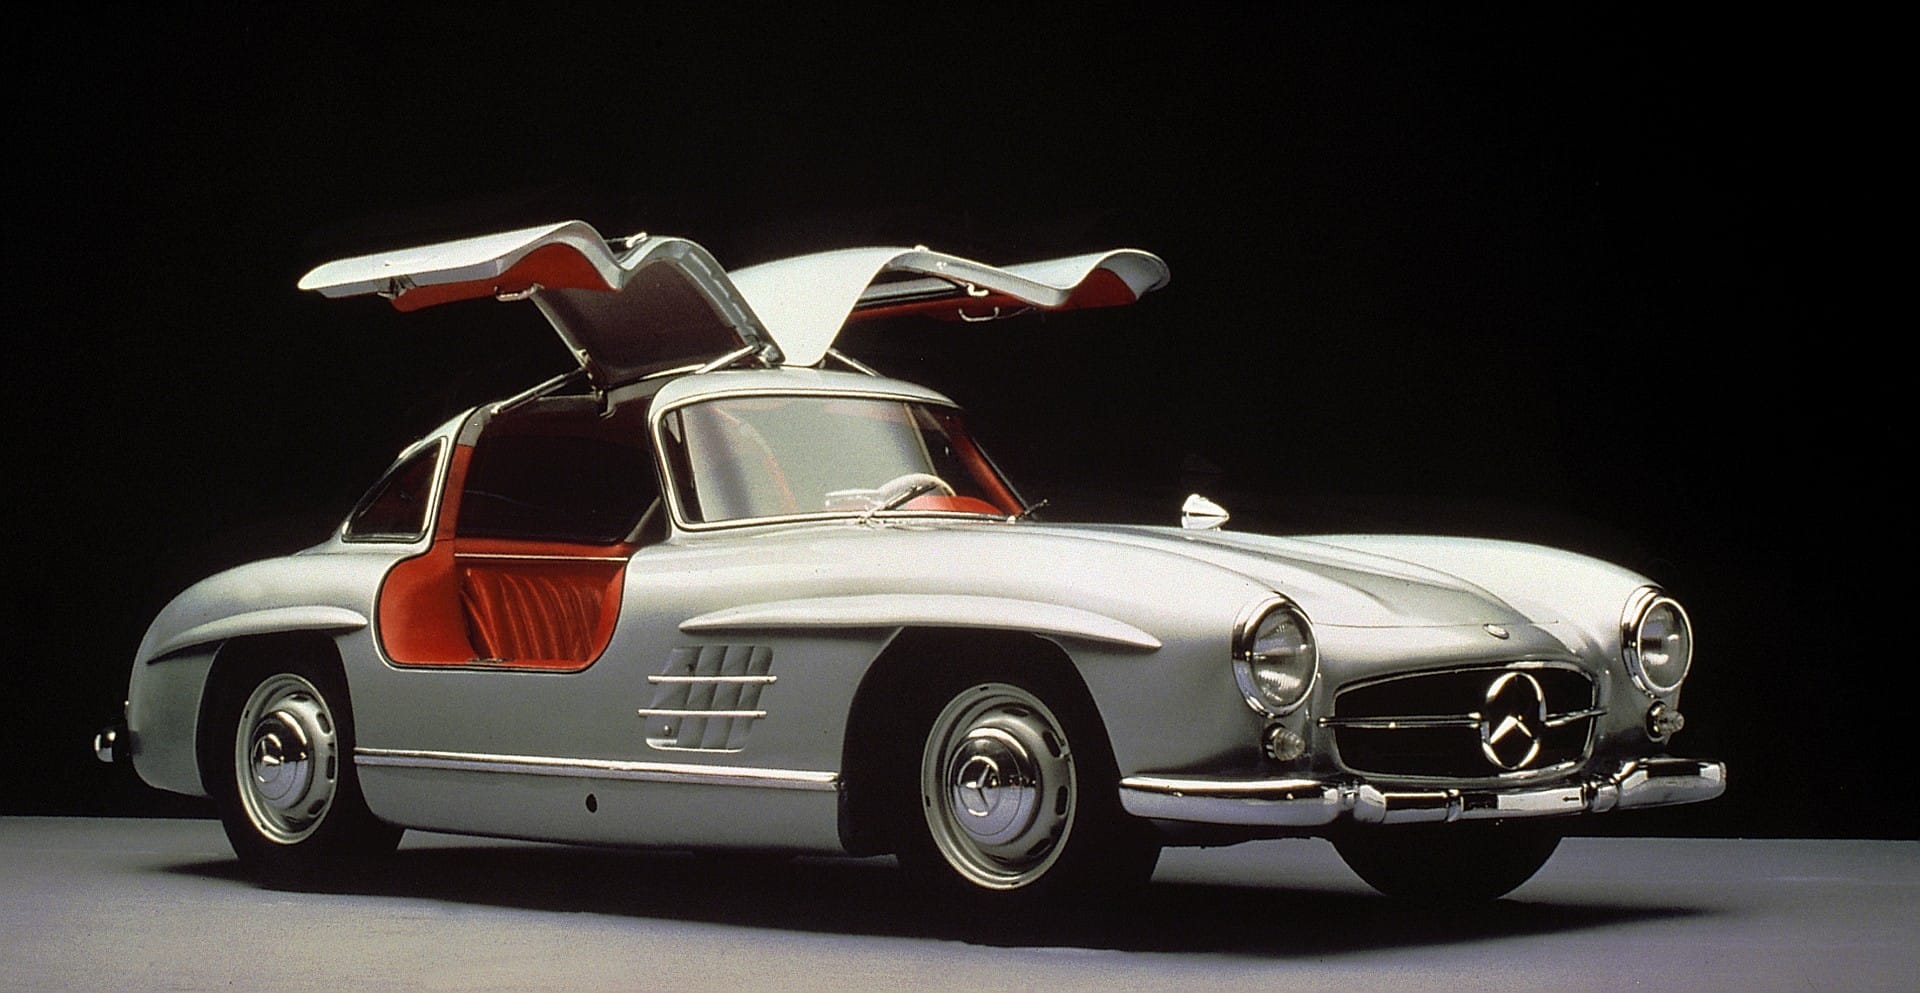 Das von 1954 bis 1957 gebaute Mercedes 300 SL Coupé ist heute ein millionenteures Investmentobjekt.